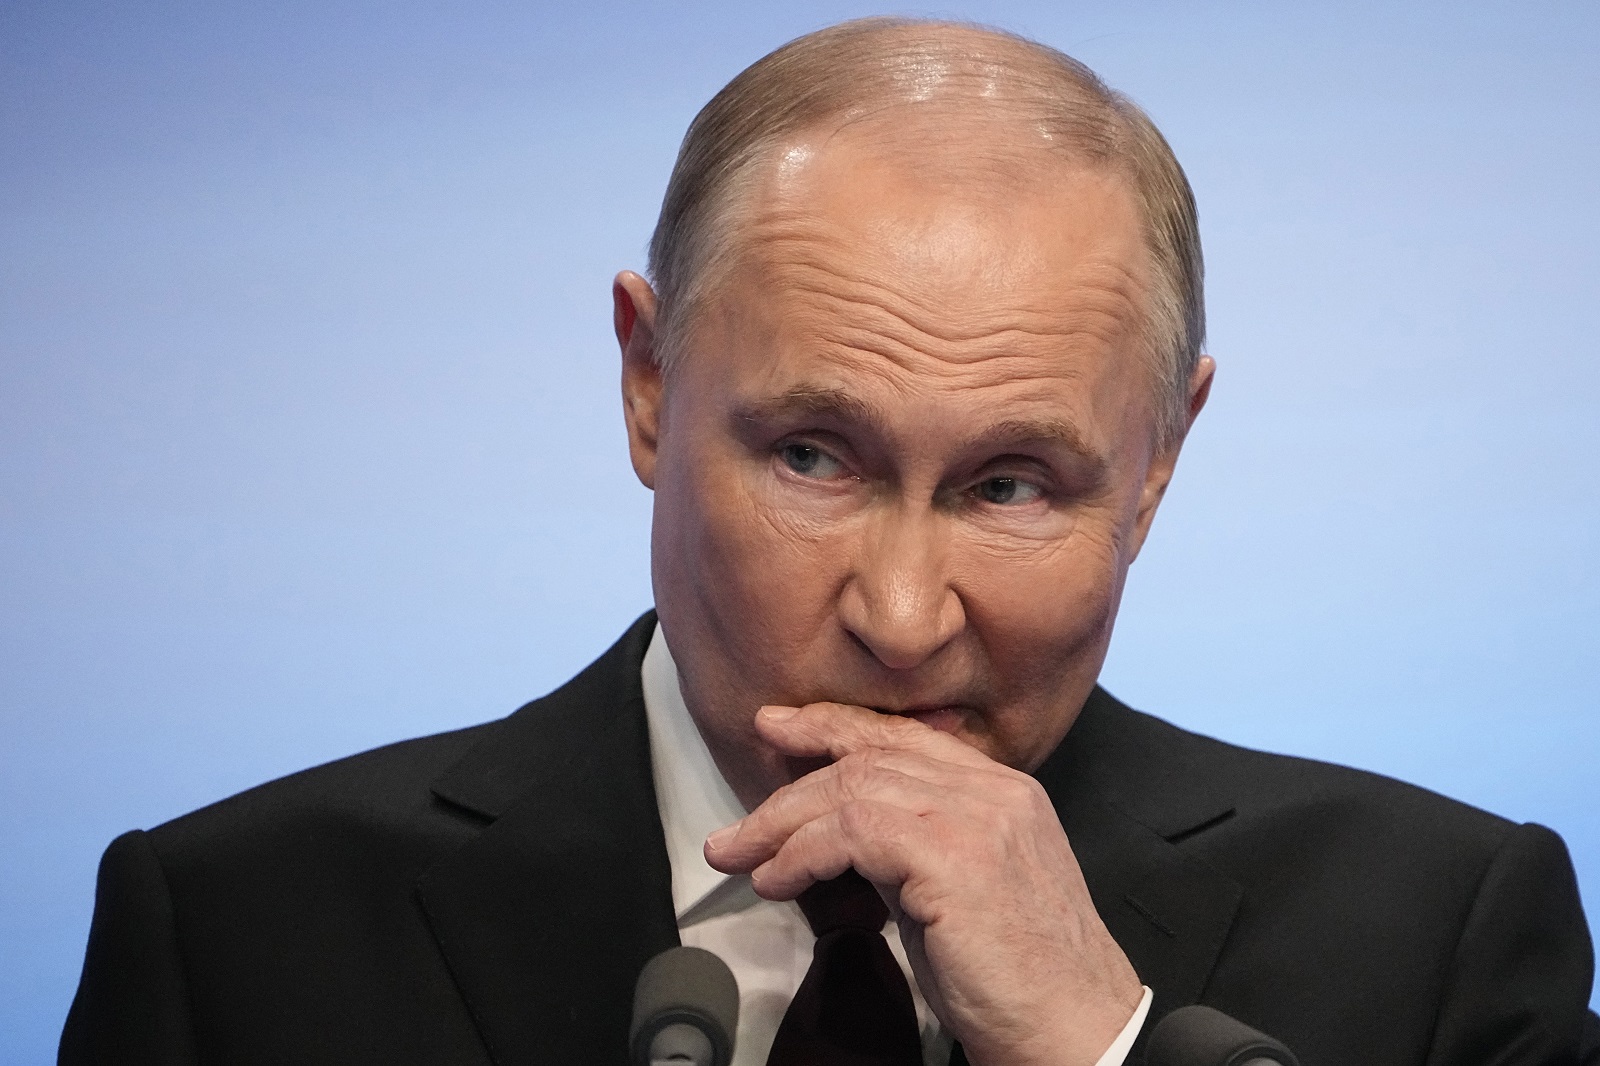 πούτιν: η πρώτη αναφορά στον ναβάλνι ήρθε μετά τον θάνατό του